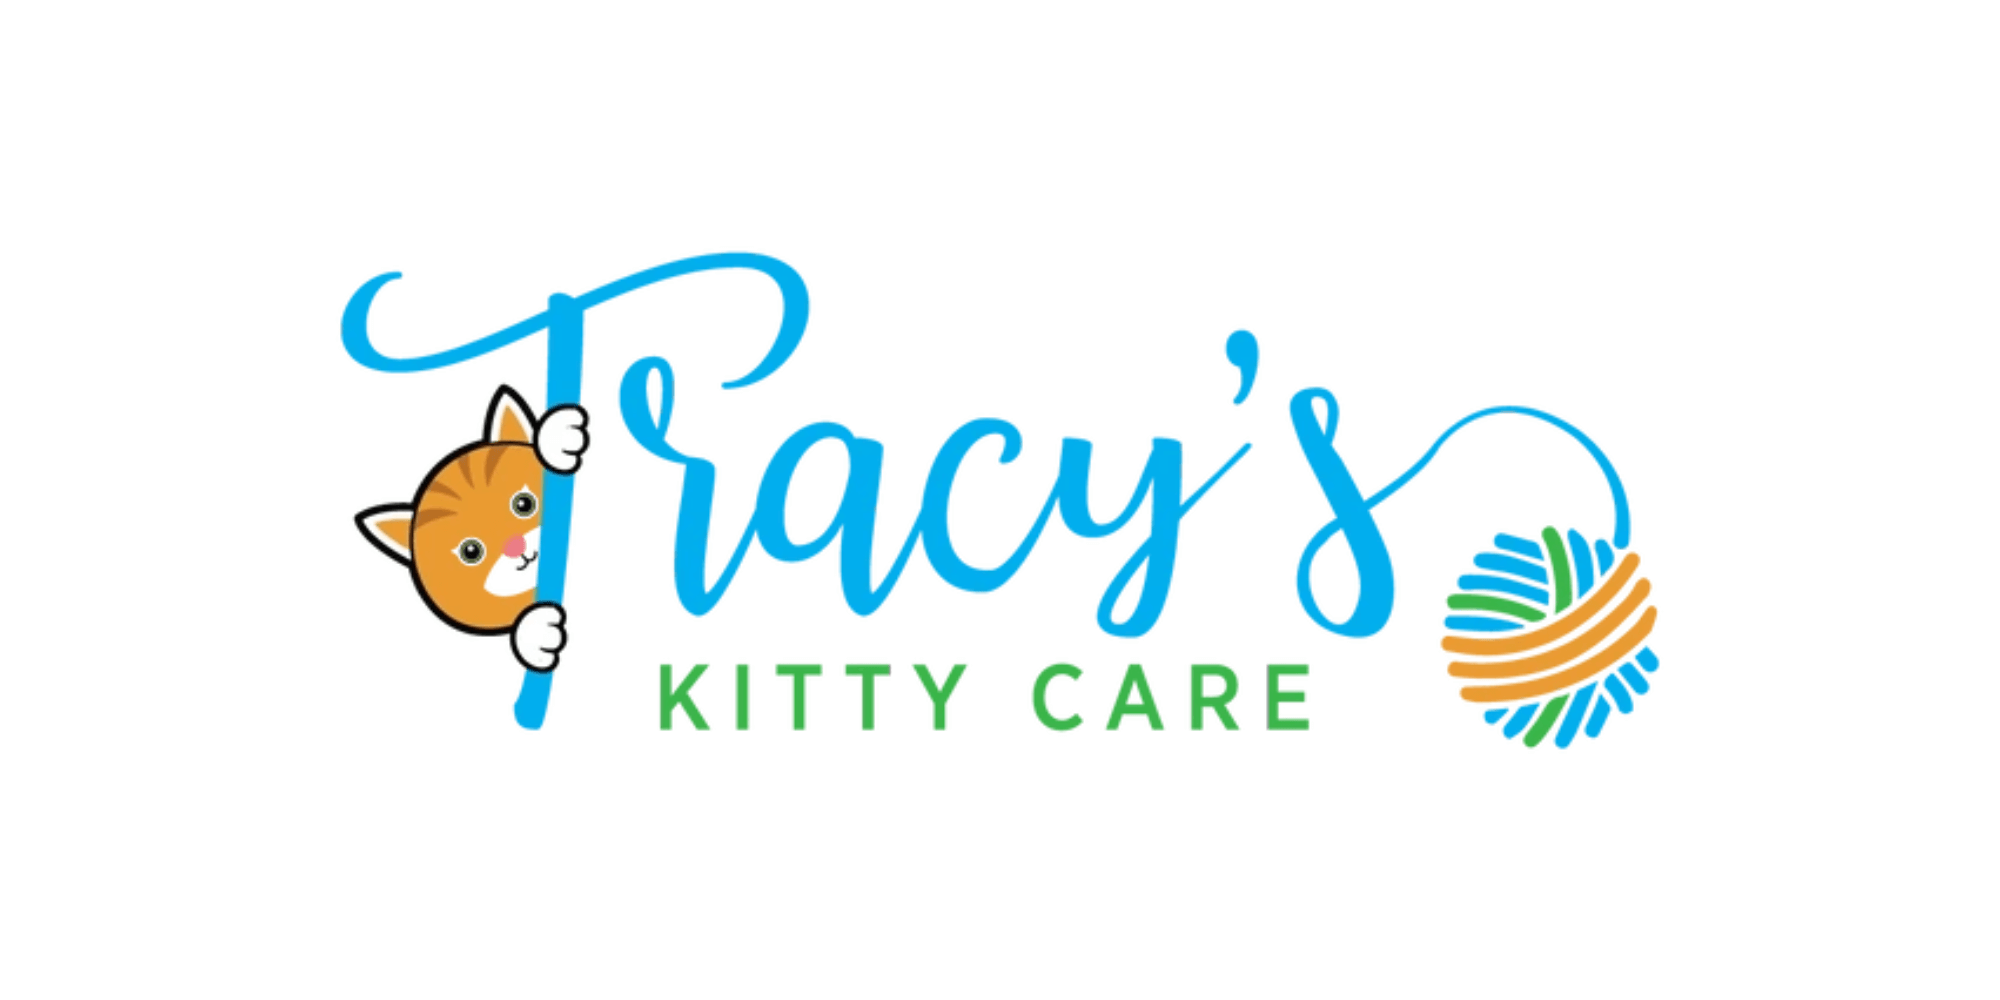 tracys-kitty-care-logo-summary.png